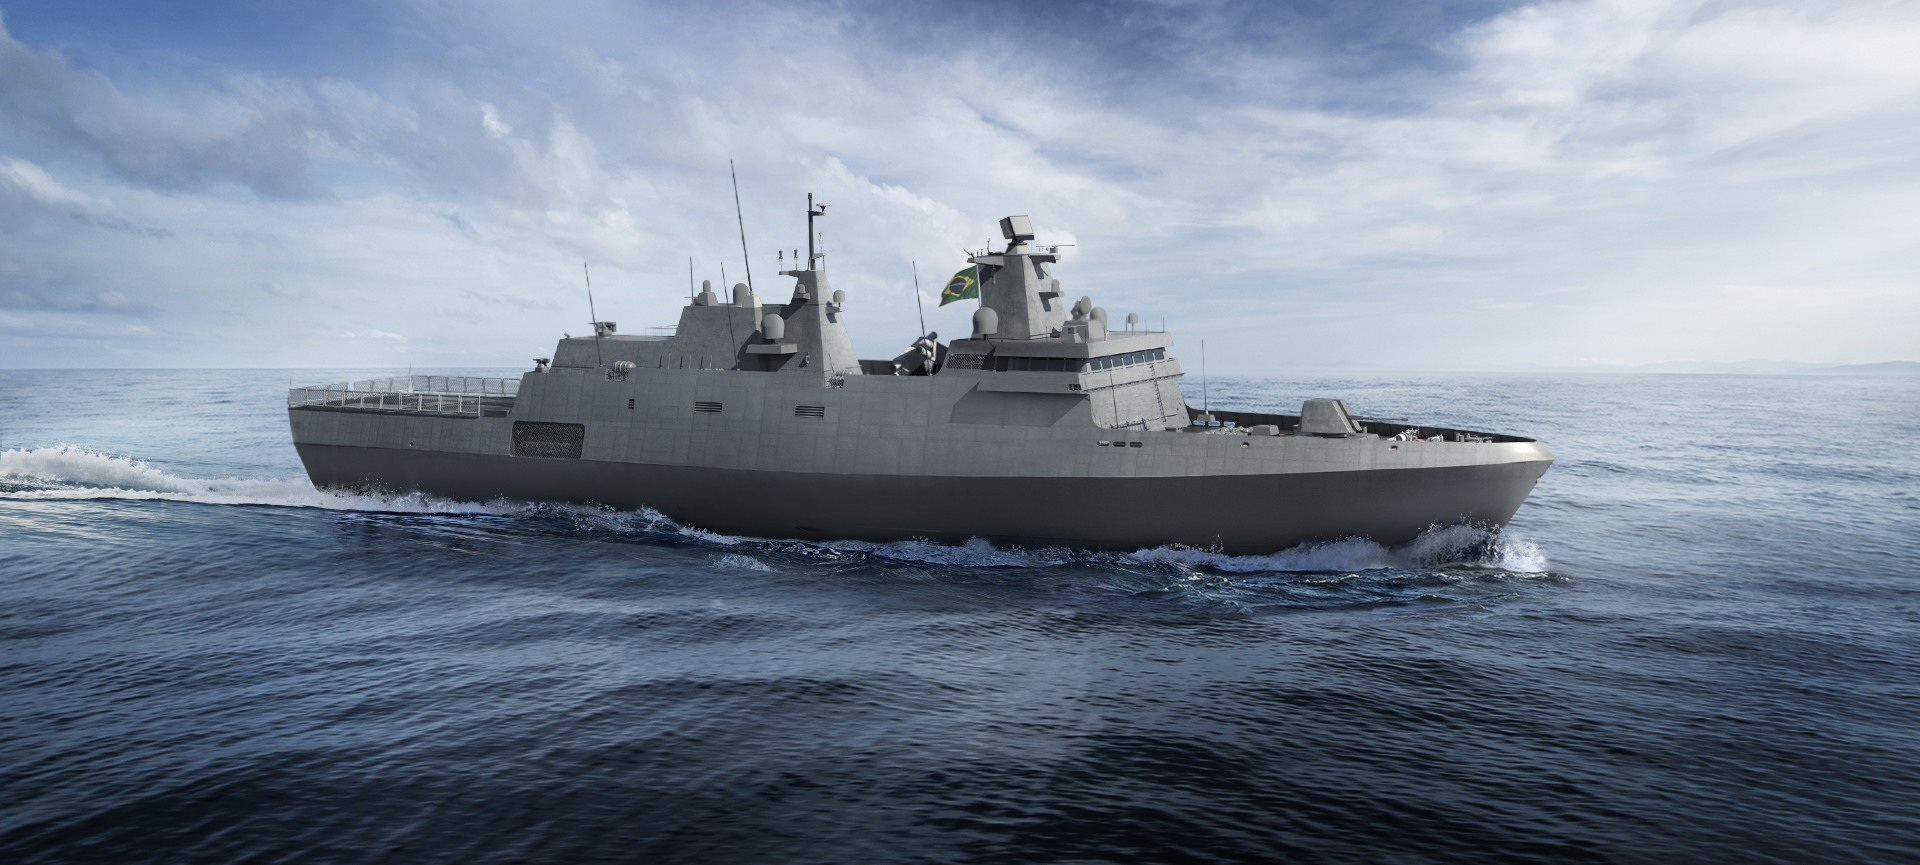 thyssenkrupp, Embraer e Atech assinam o contrato de construção dos Navios Classe Tamandaré da Marinha do Brasil